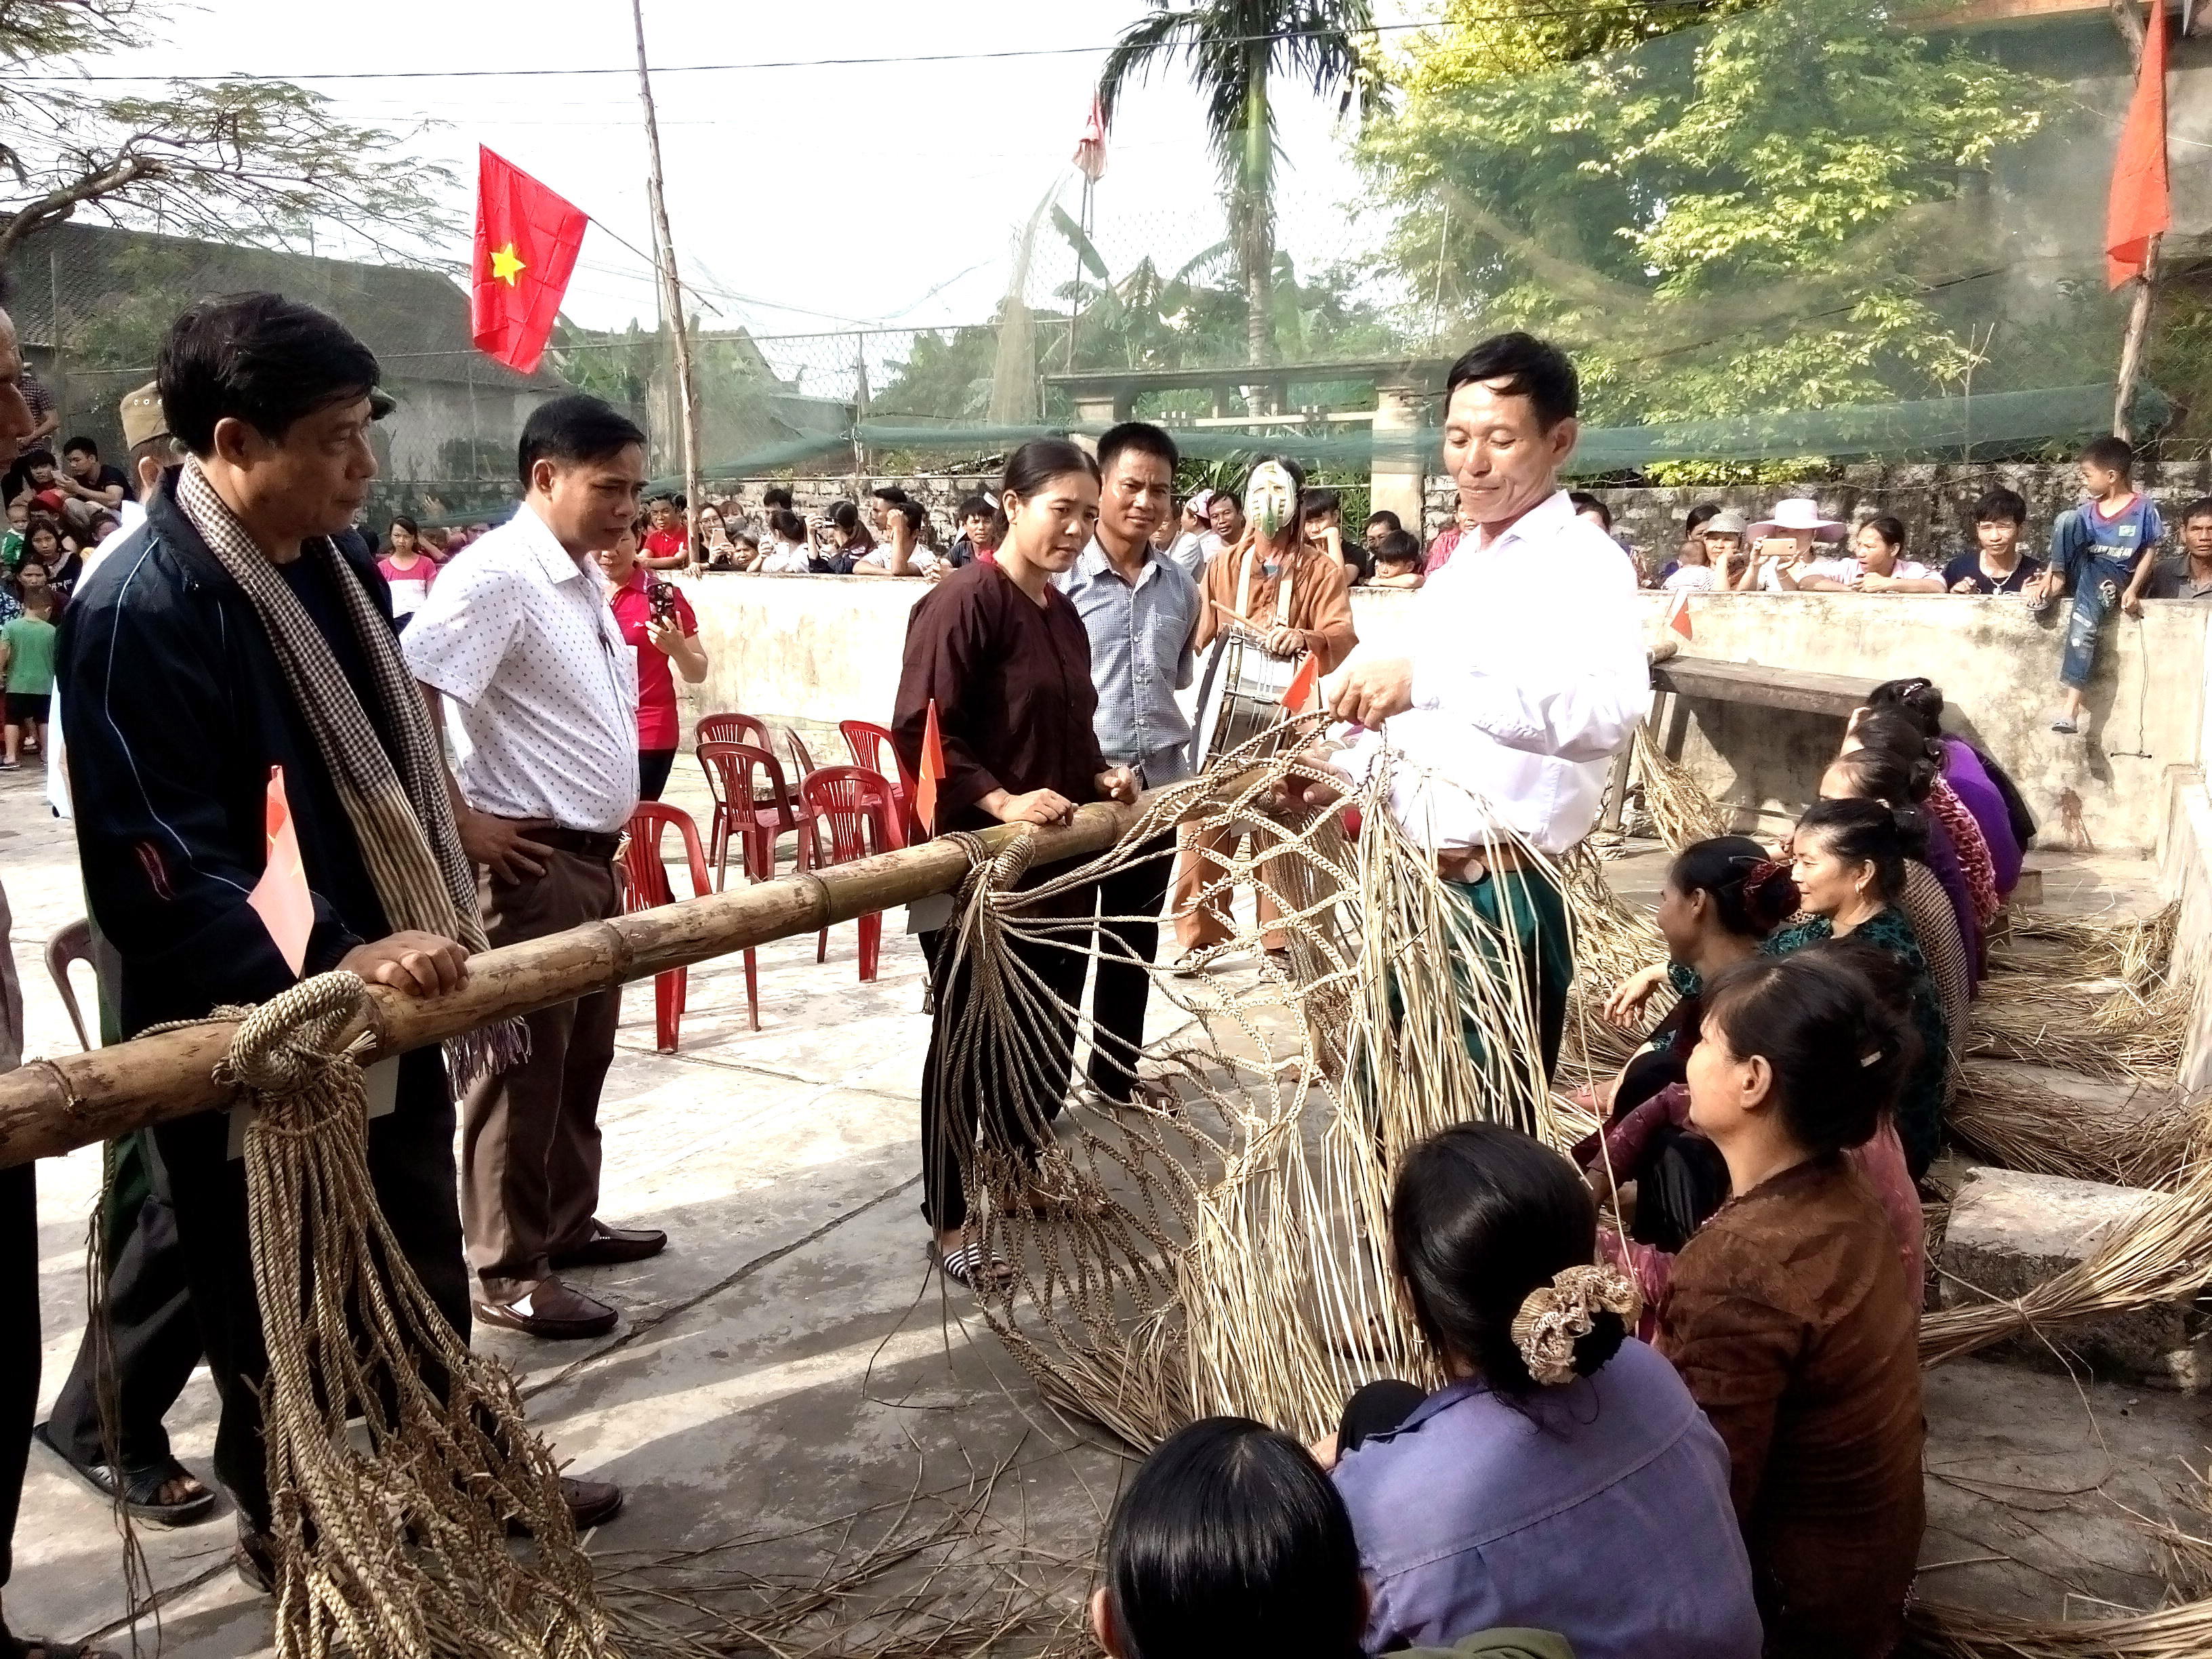 Nghề đan võng hiện đã bị mai một ở làng Phú Hậu xã Diễn Tân. Ảnh Mai Giang